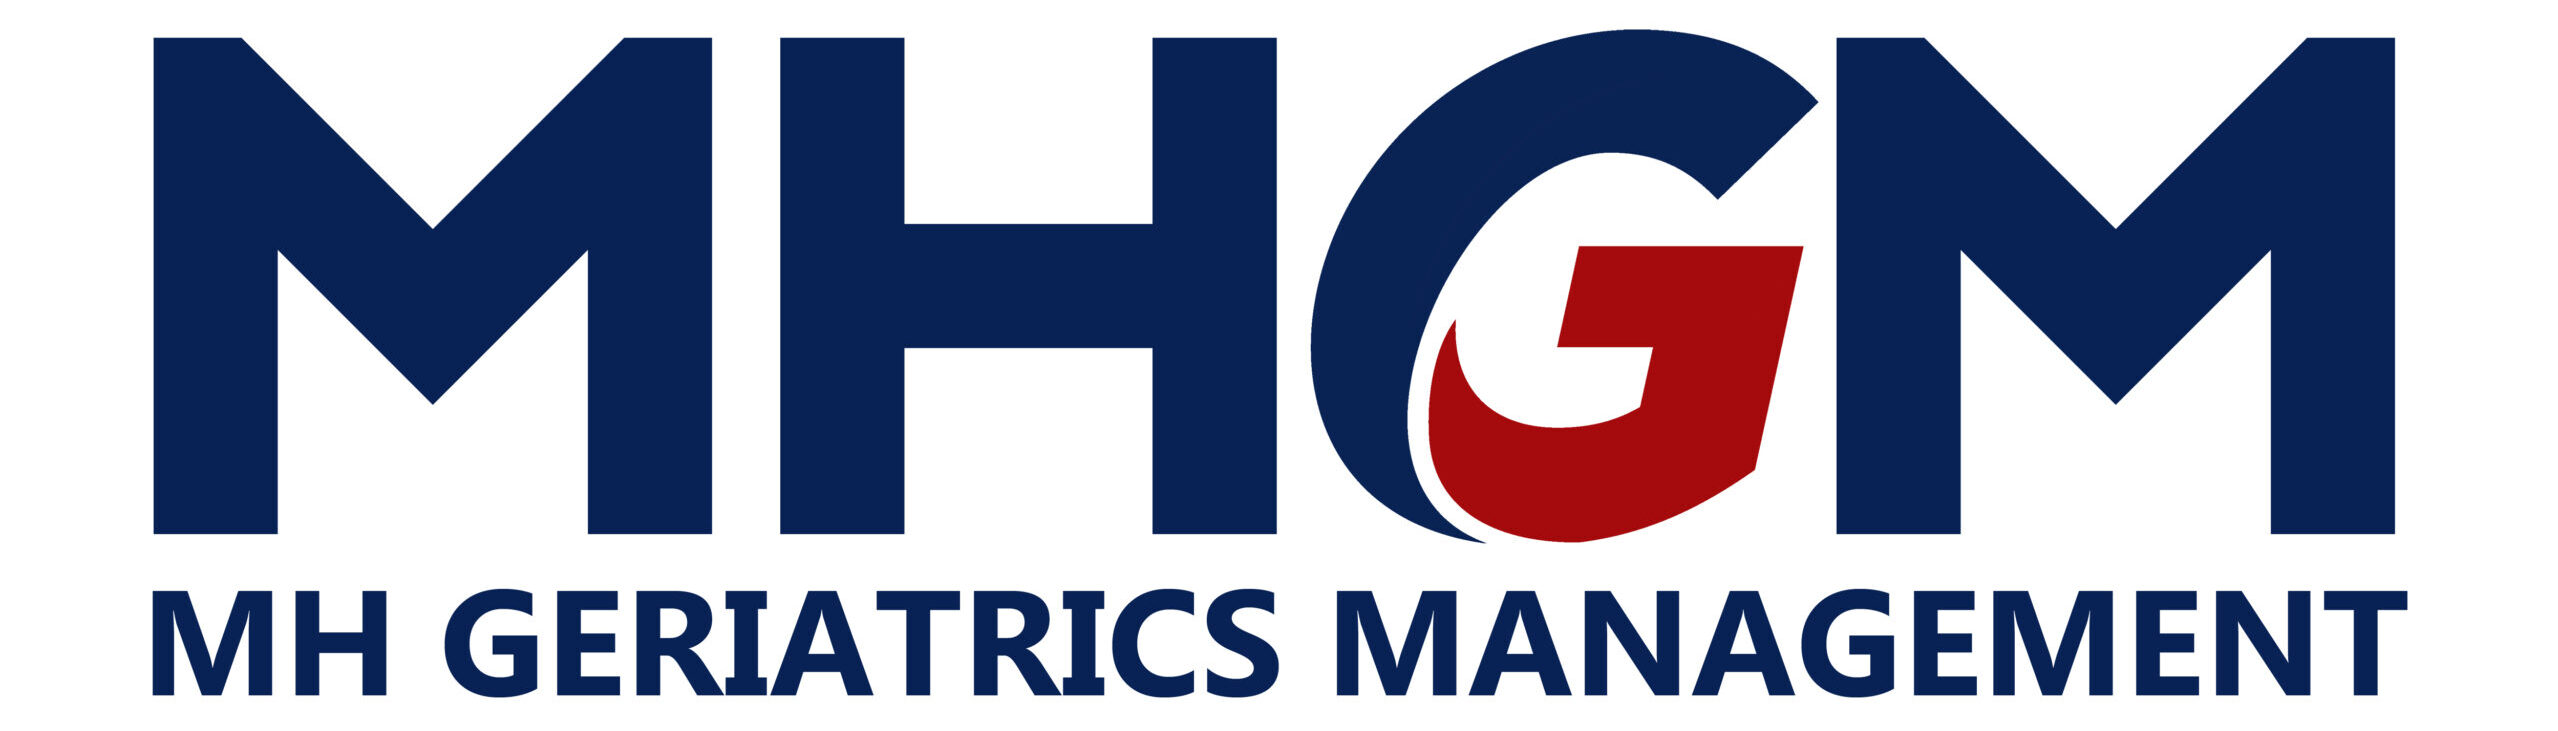 MH Geriatrics Management